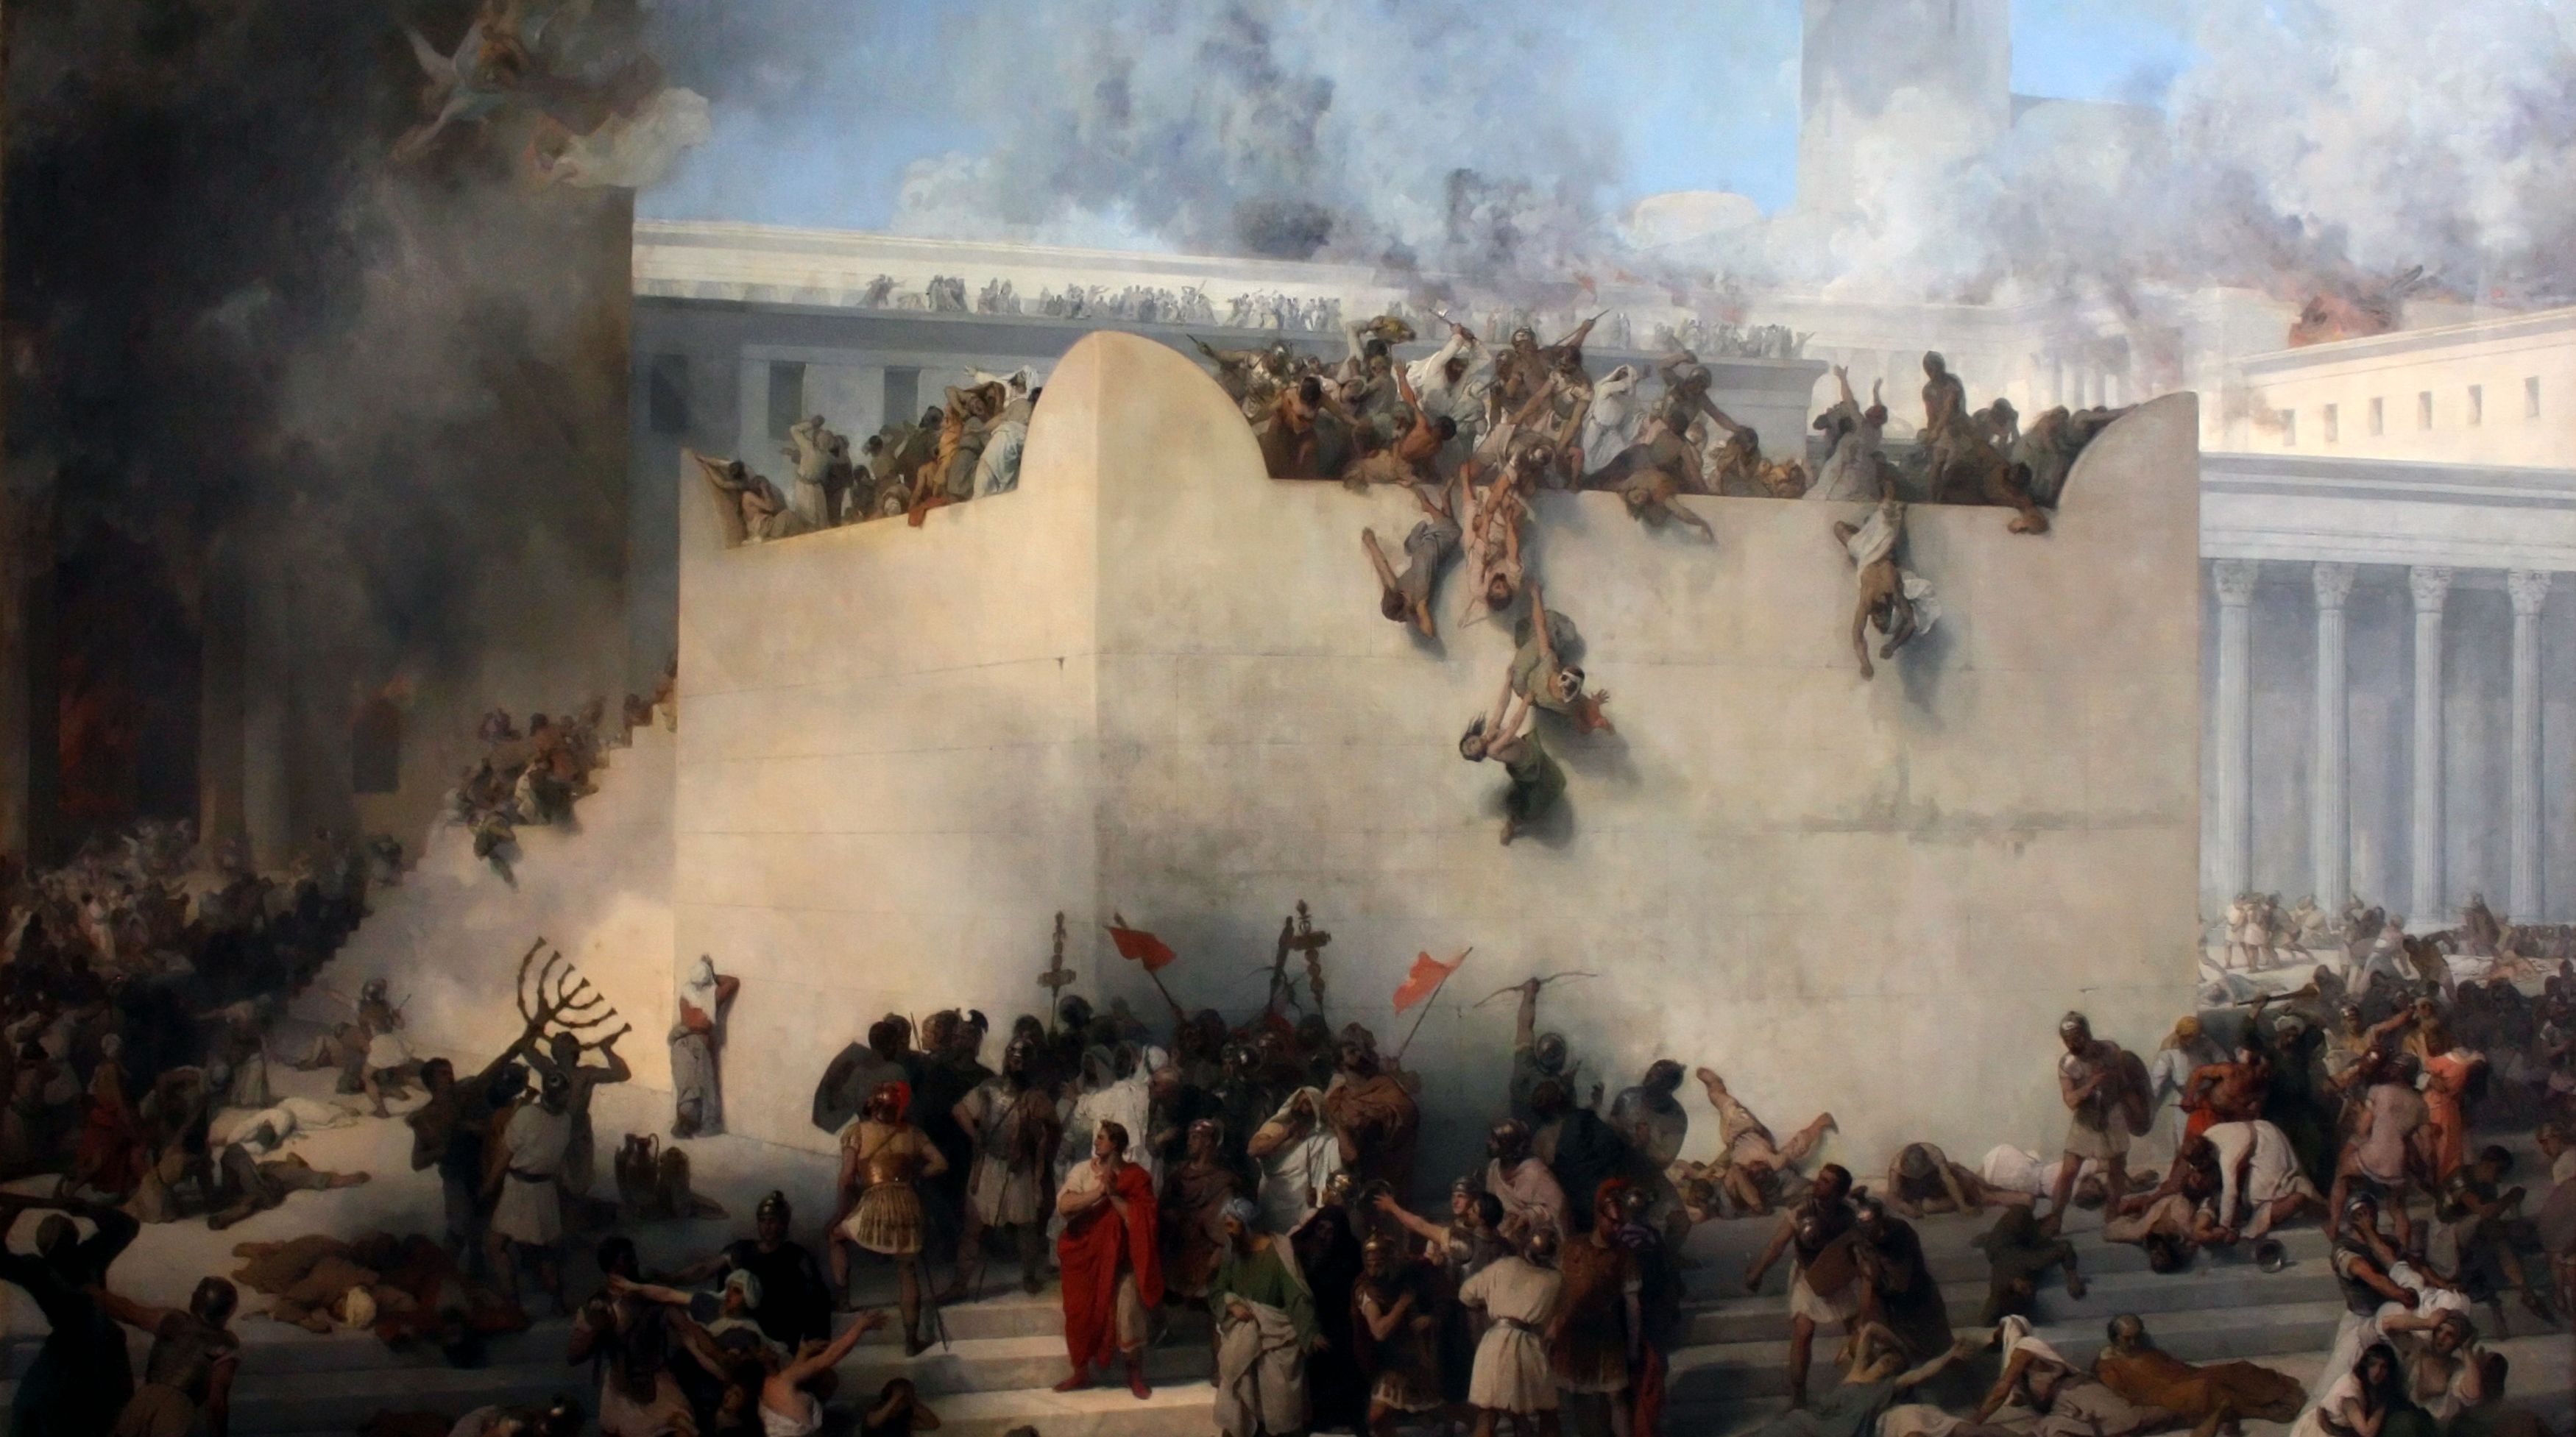 חורבן ירושלים בראי הפוליטיקה הרומית| ד"ר דויד גורביץ'